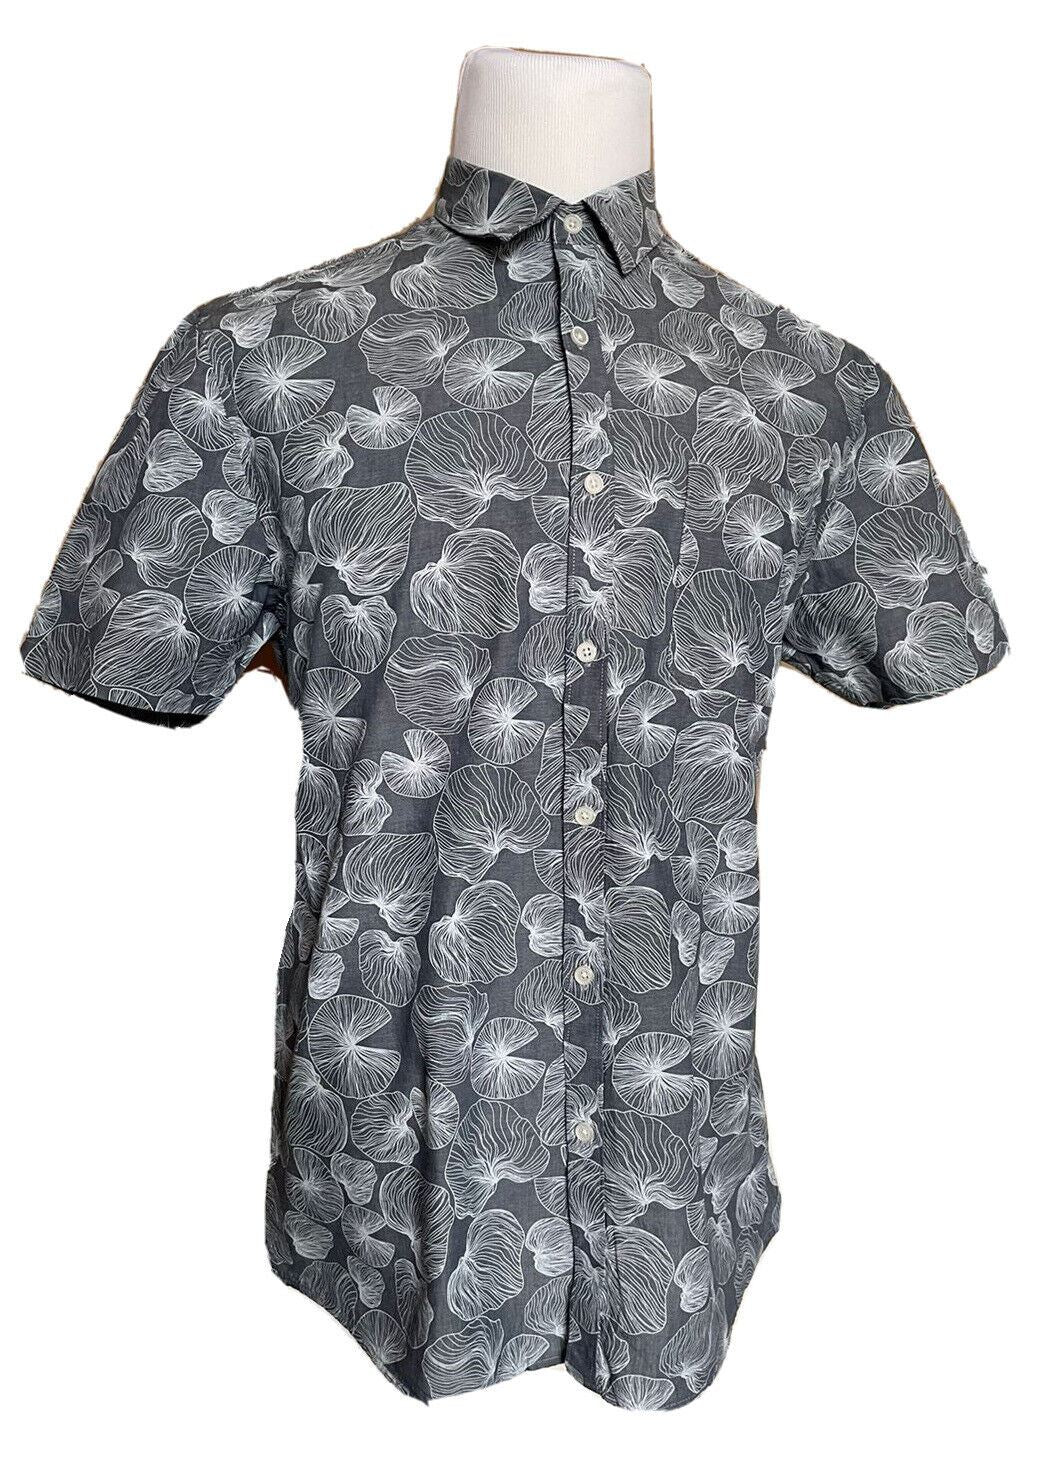 Мужская классическая рубашка из льна/хлопка с короткими рукавами темно-сланцевого цвета NWT Civil Society, большая